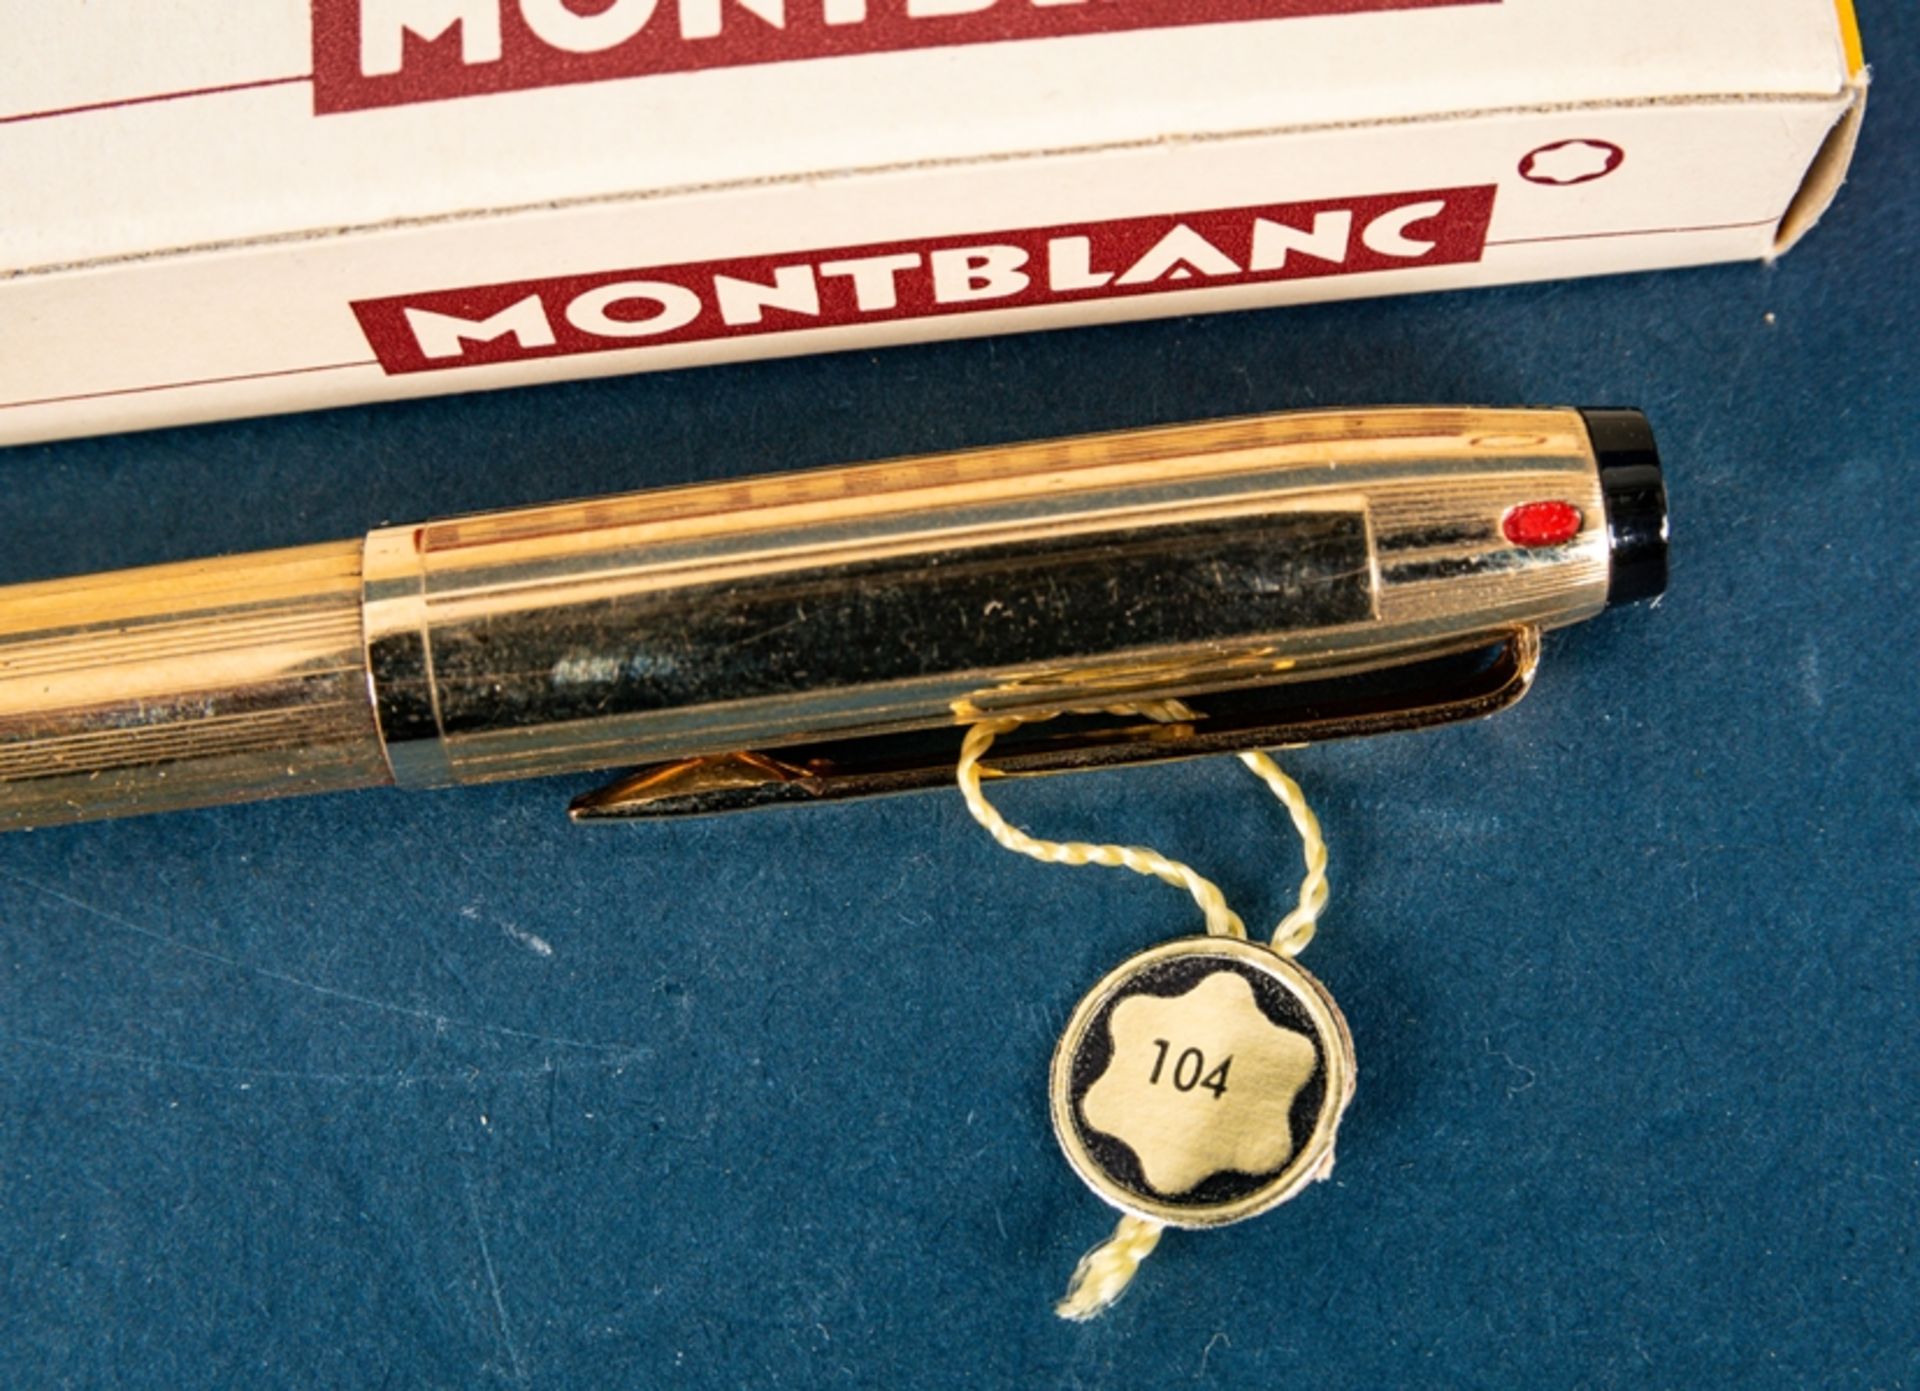 MONTBLANC PIXOMAT 4farbiger Kugelschreiber, vergoldetes Gehäuse, Länge ca. 13,2 - Bild 3 aus 5